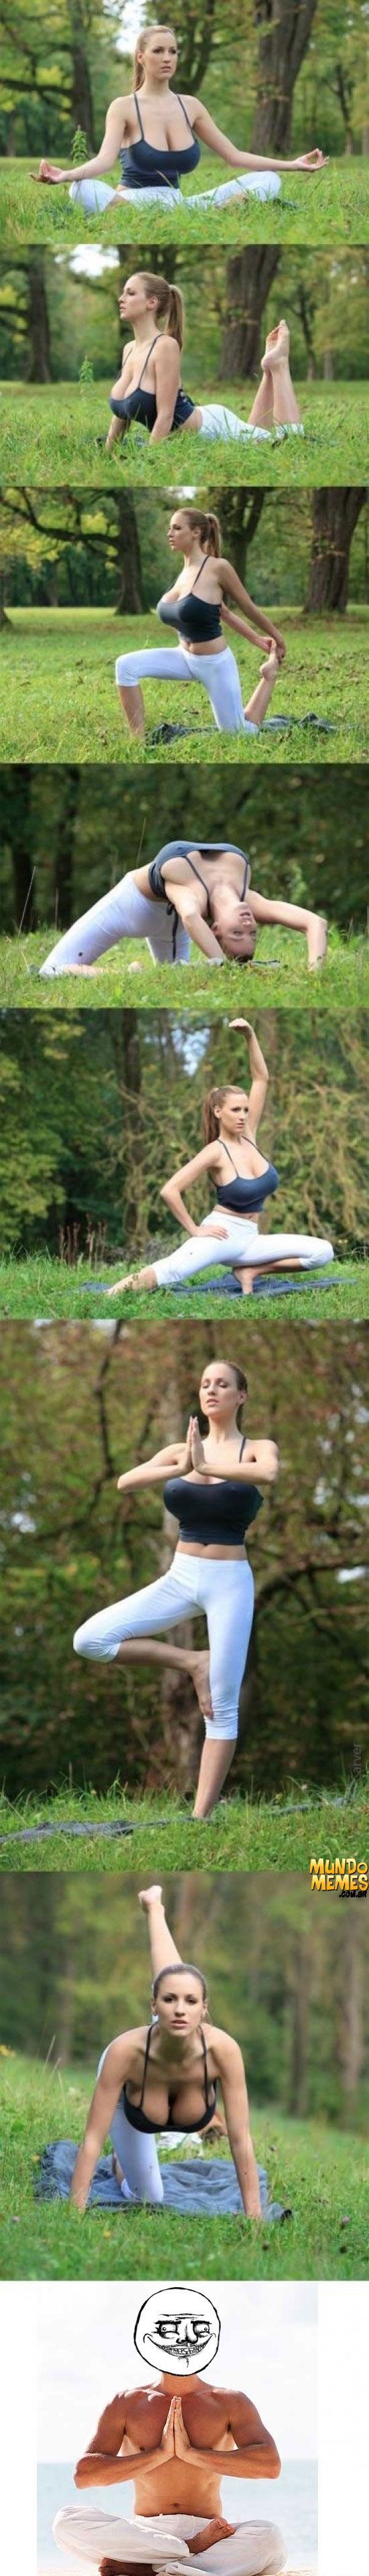 Motivo para amar yoga!!  - meme